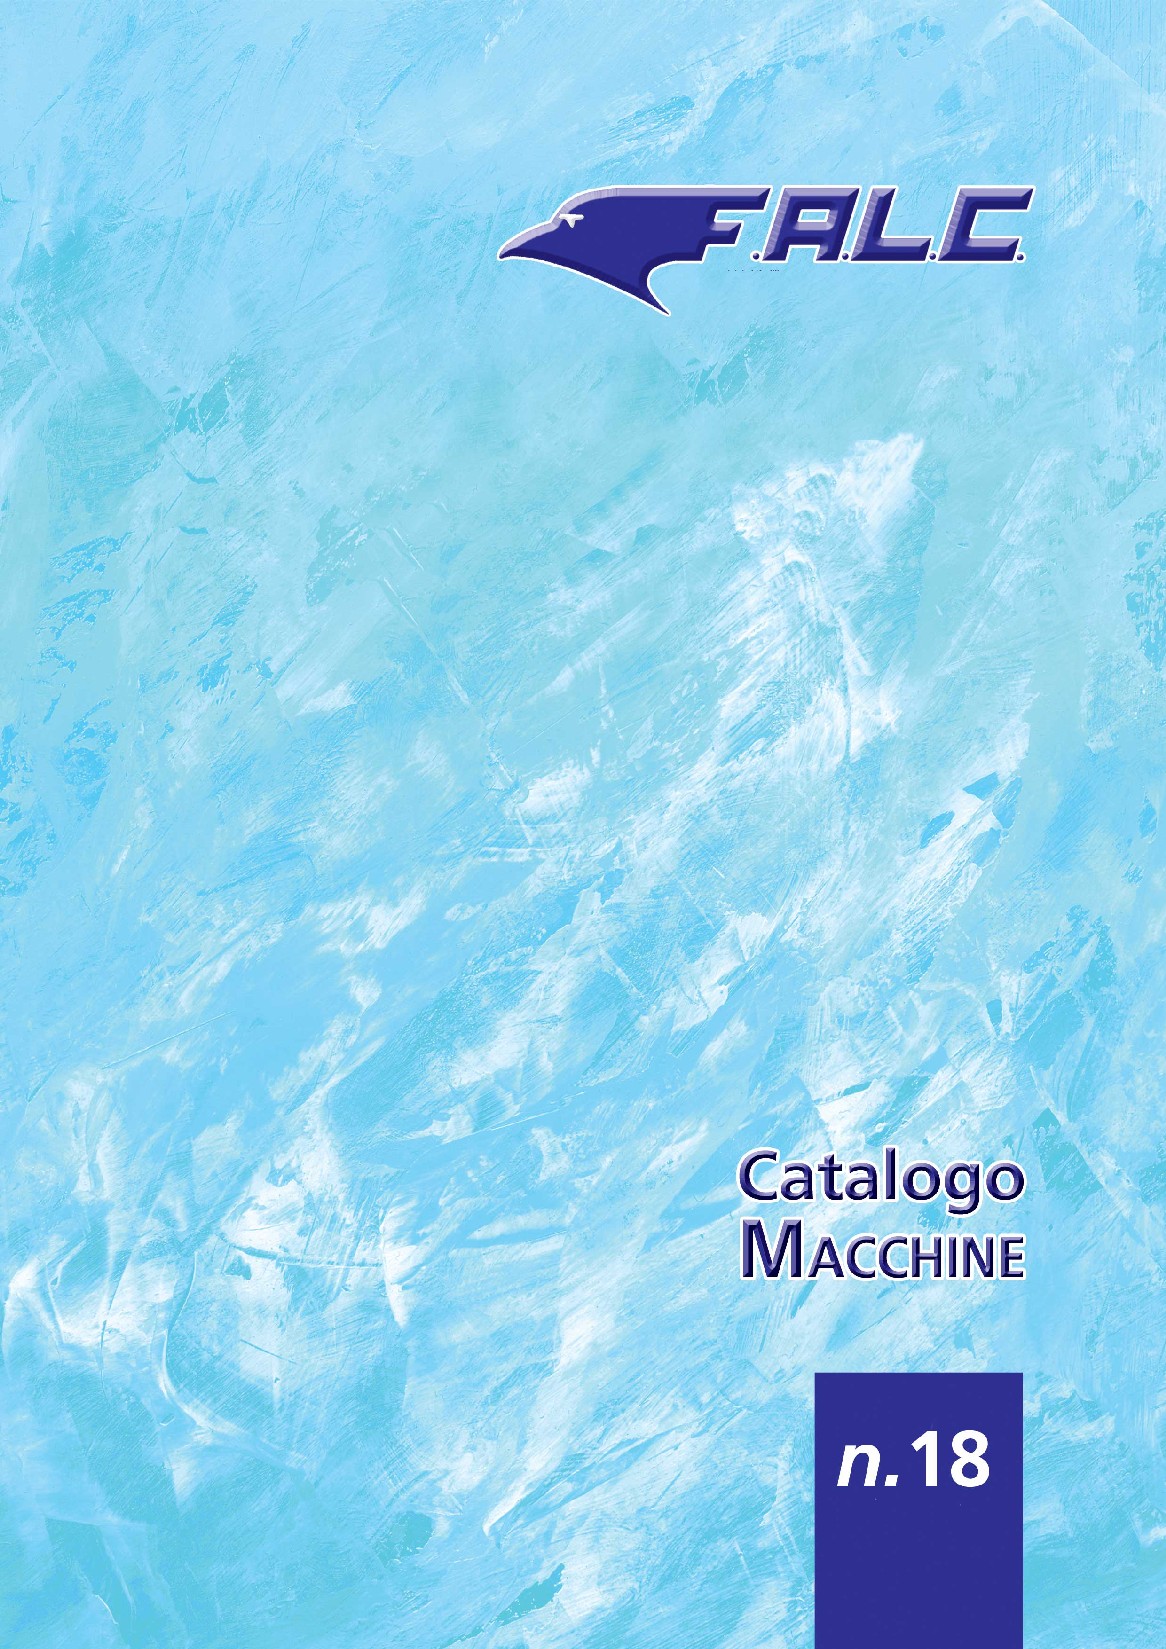 CatalogoMacchine.jpg (485444 byte)